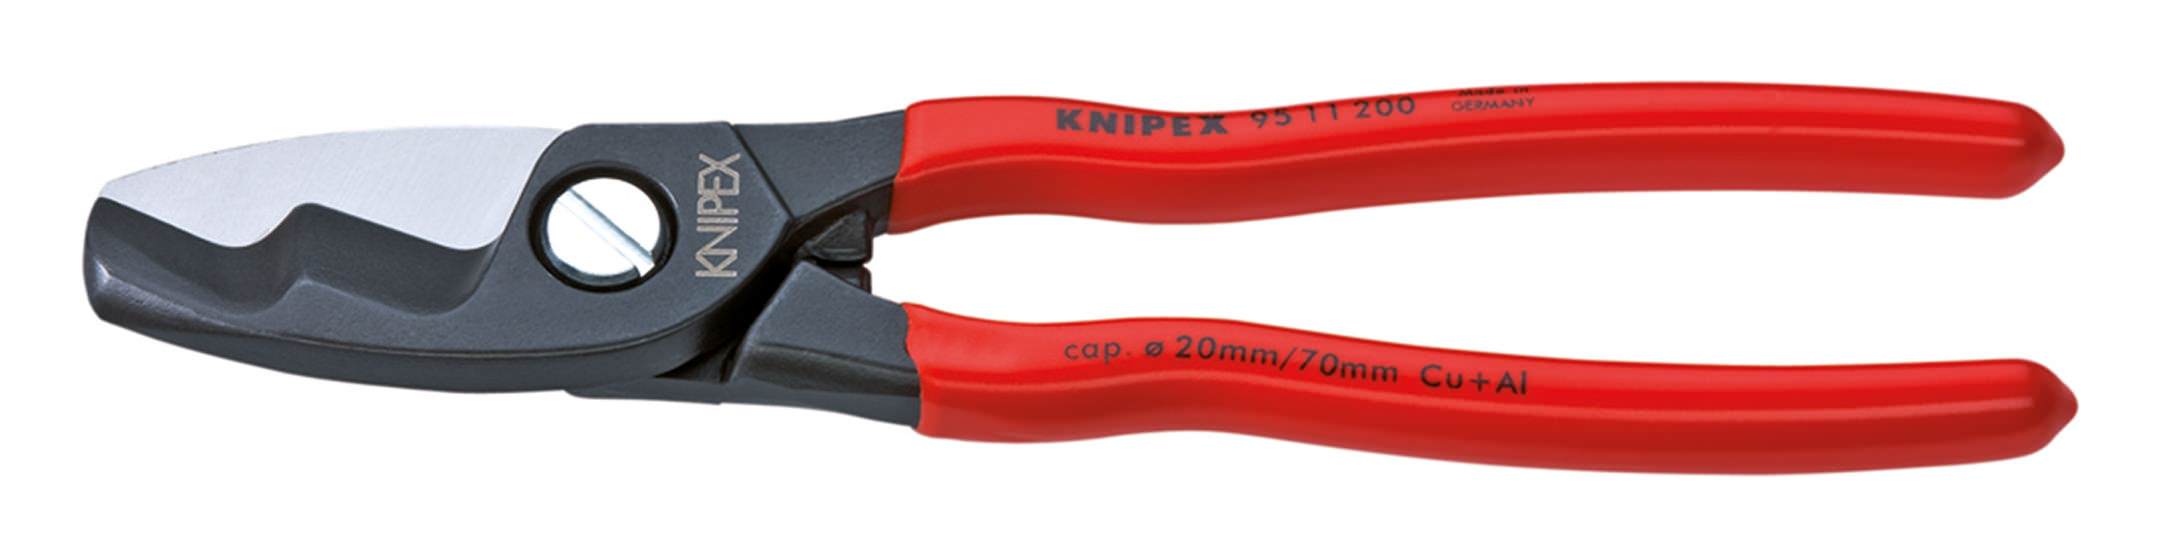 Knipex Kabelschere 200mm mit Kunststoff | 95 200 11 Griff